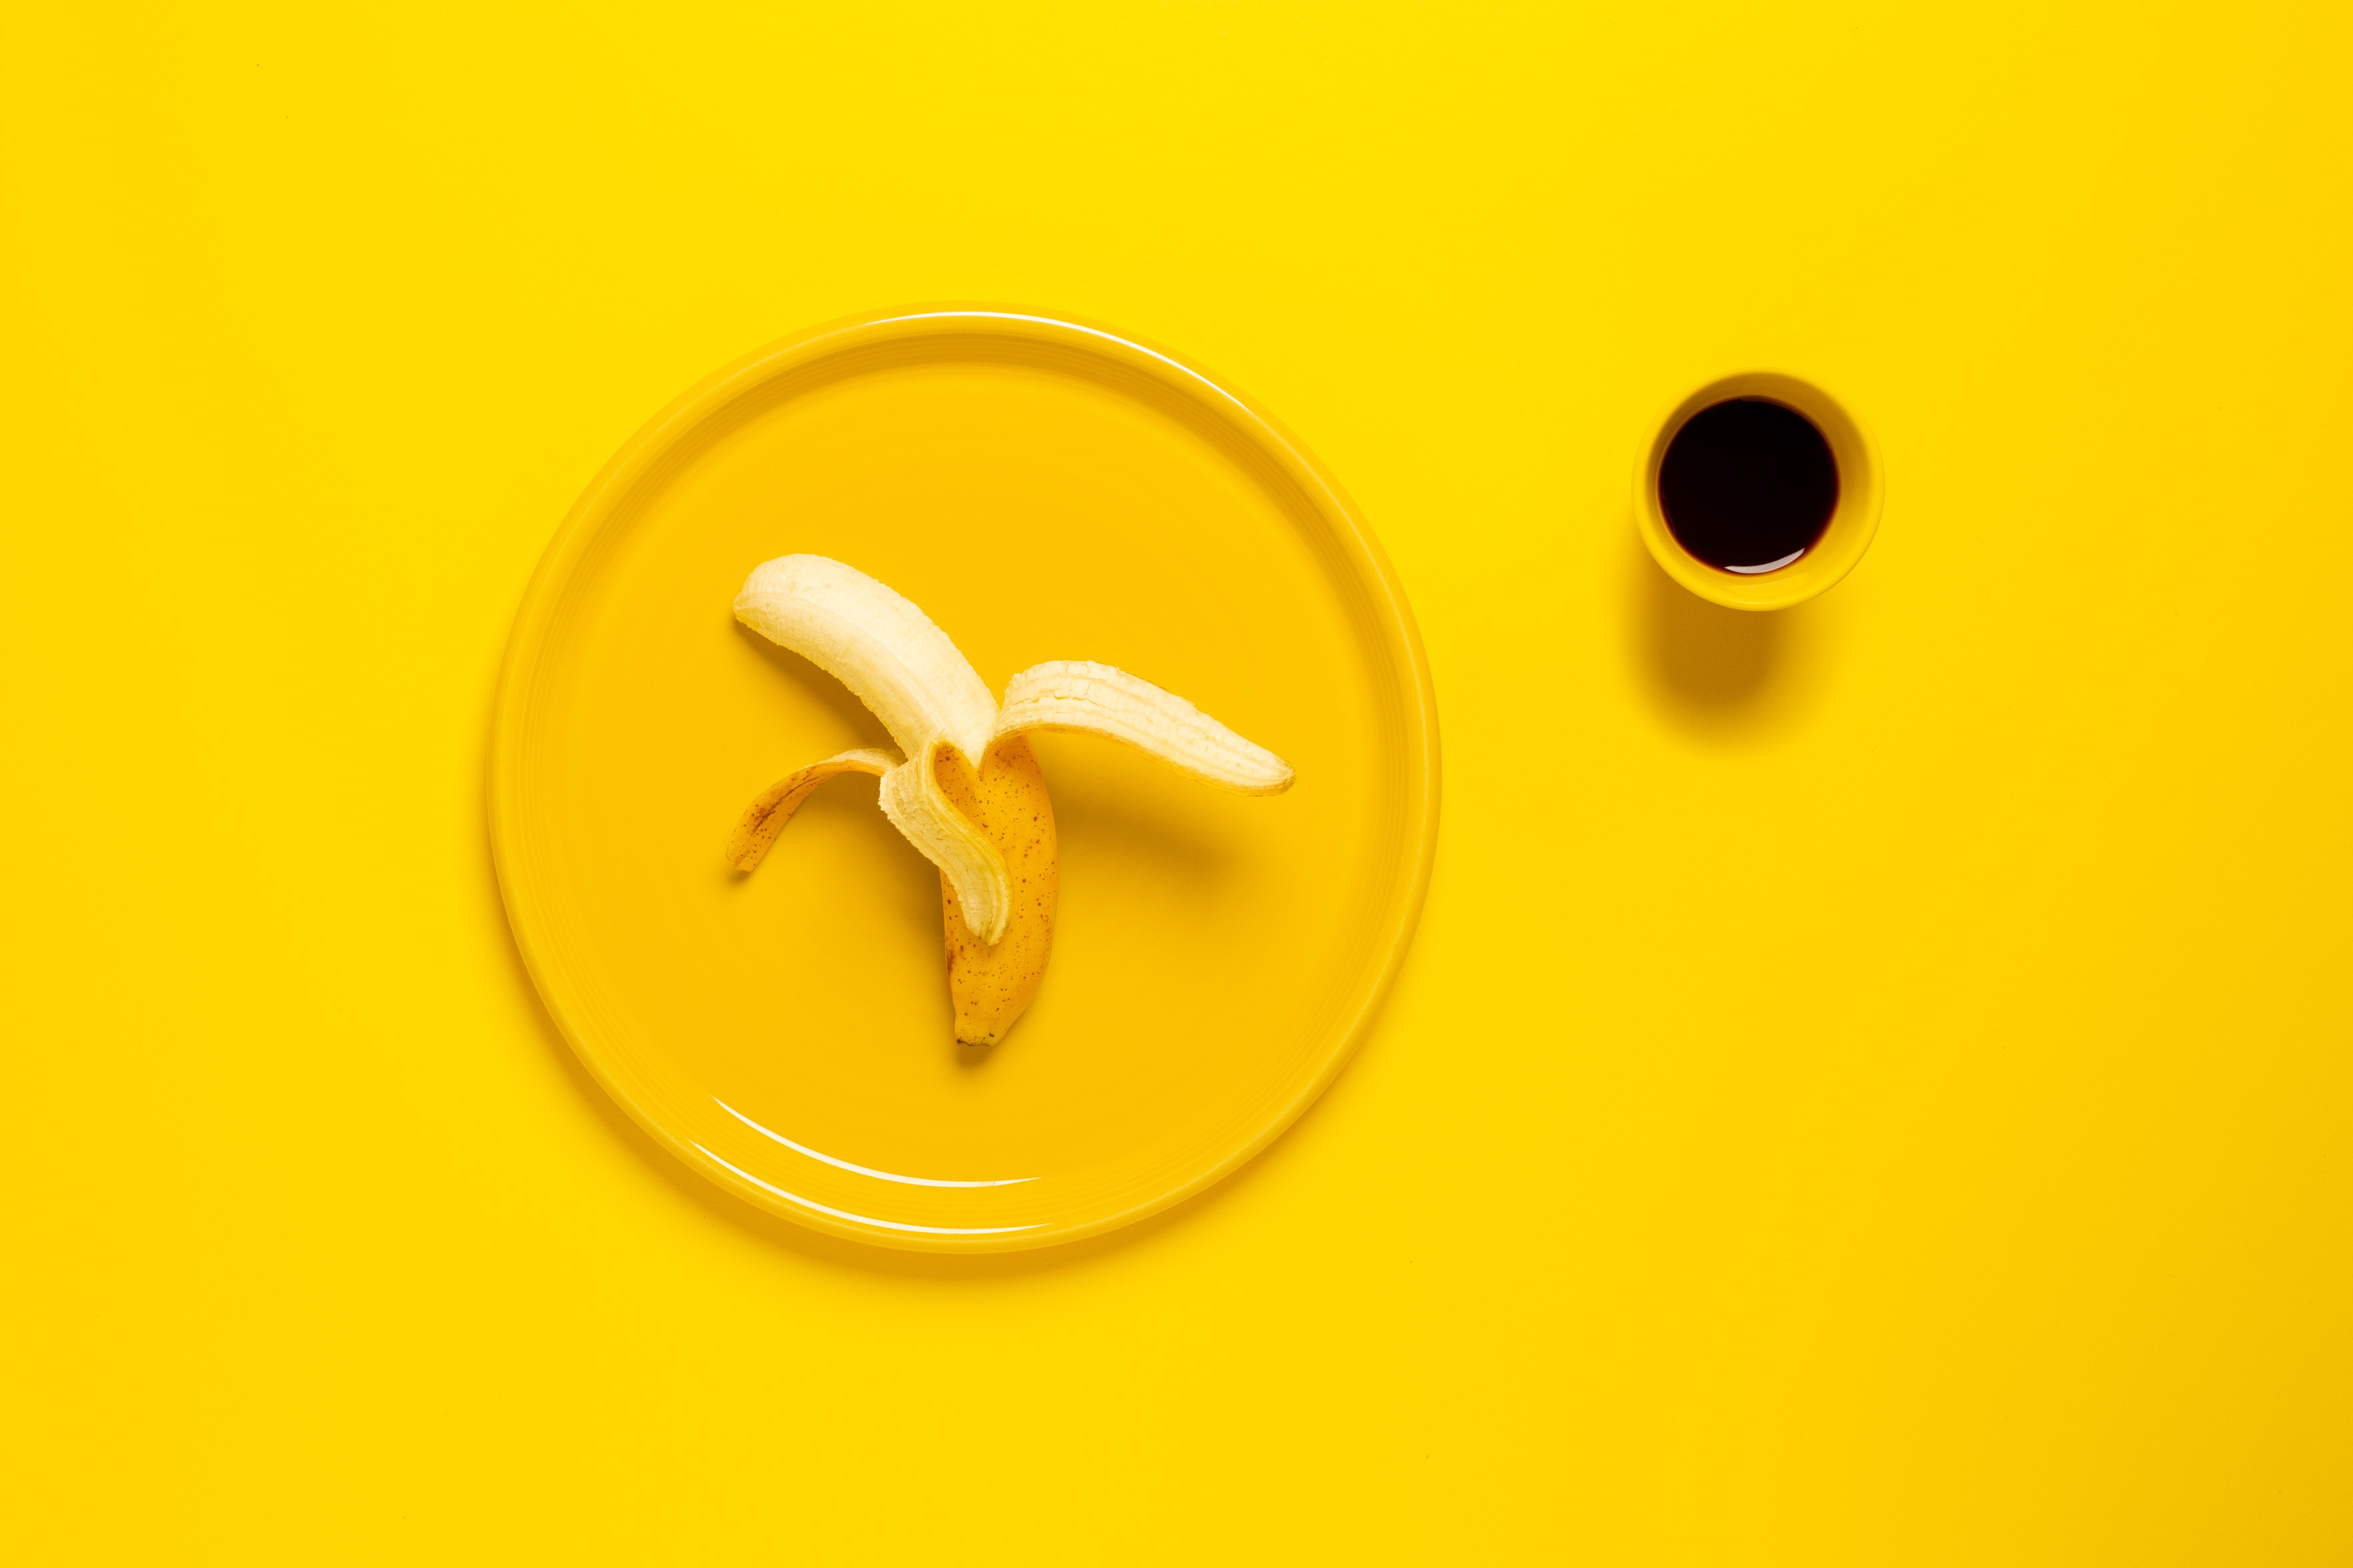 バナナの夢の意味とは 食べる 見る もらうなど状況別分析 夢占い マイナビウーマン